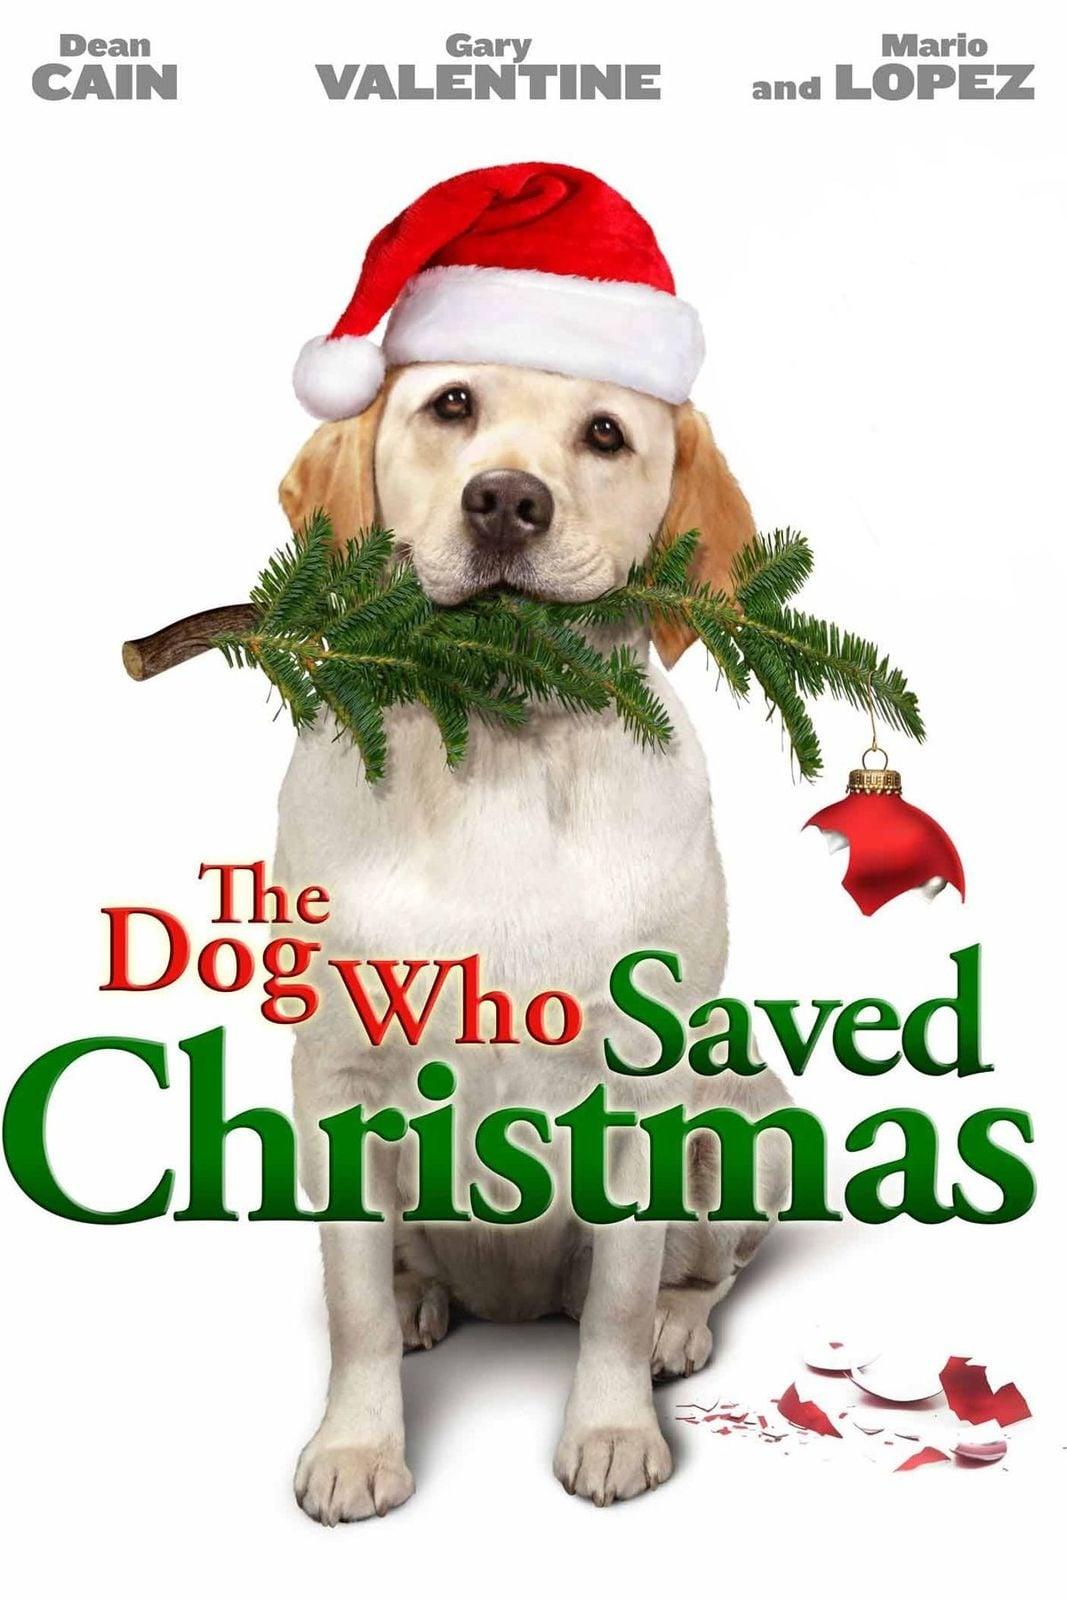 The Dog Who Saved Christmas poster